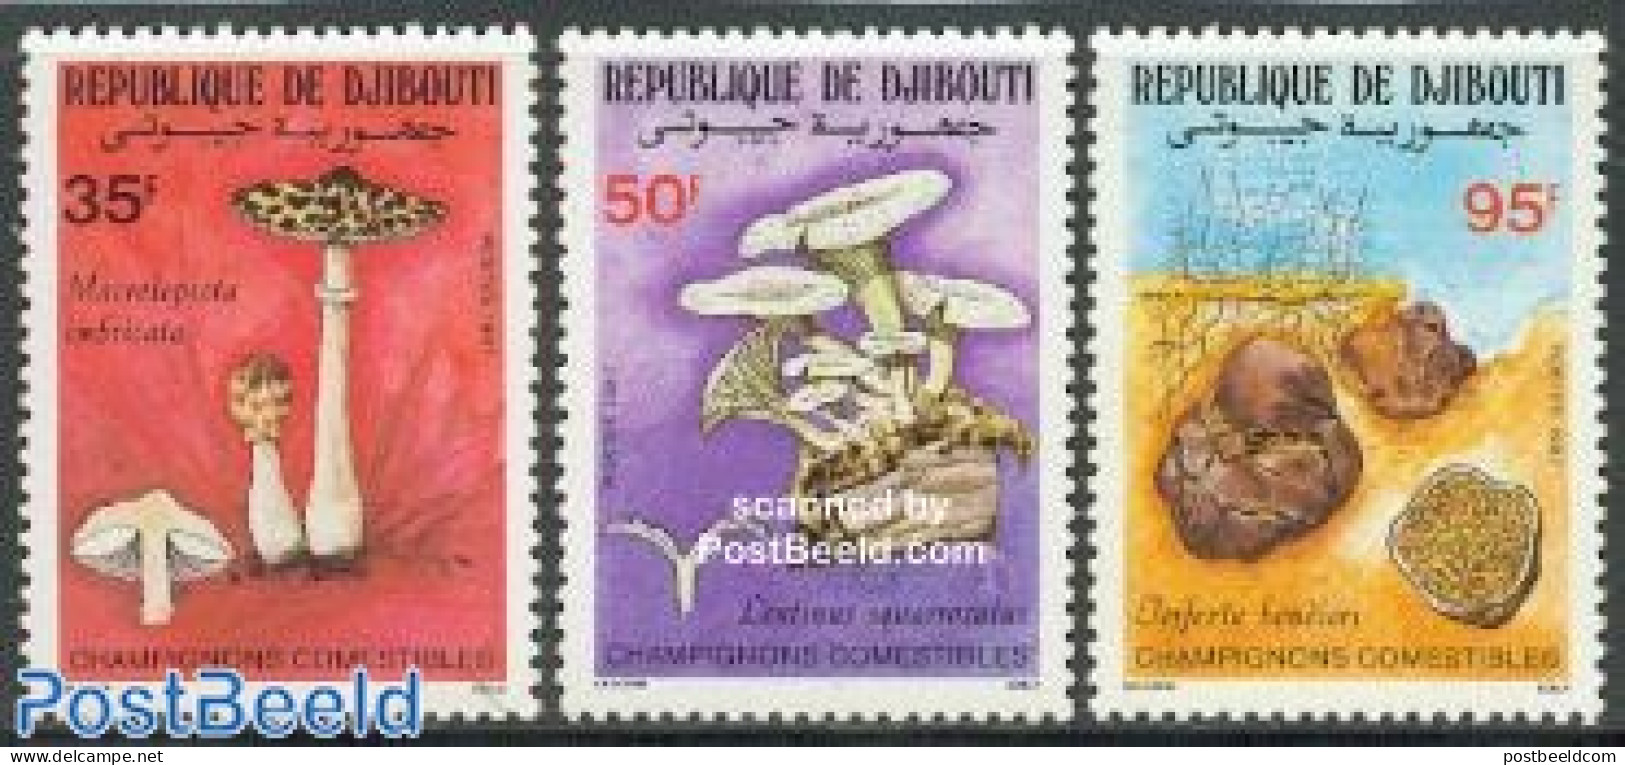 Djibouti 1987 Mushrooms 3v, Mint NH, Nature - Mushrooms - Pilze